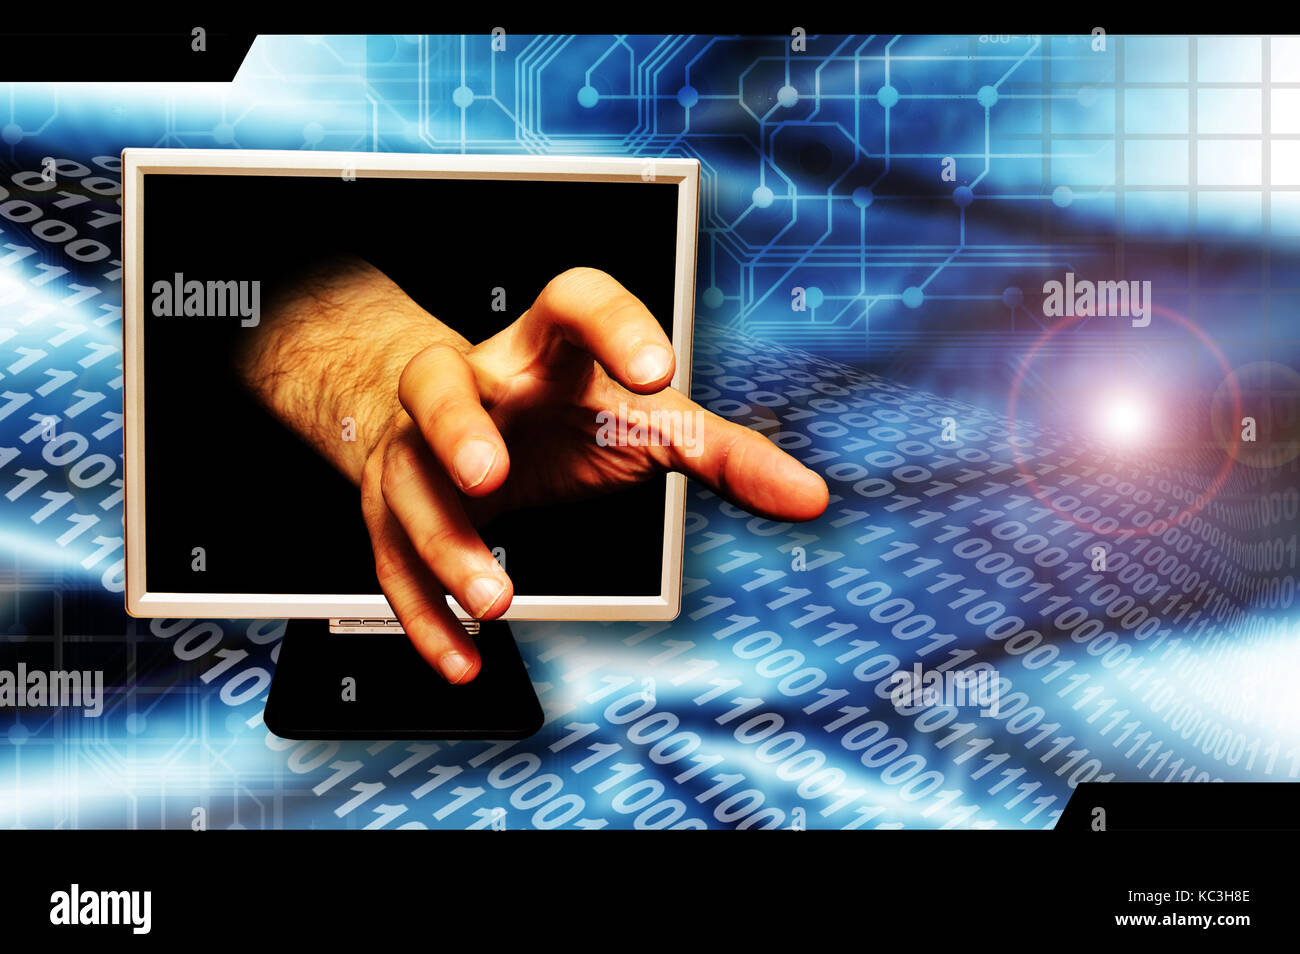 La main des hommes qui sortent de l'écran d'un ordinateur, dans un geste saisissant, le vol d'identité et de la criminalité sur internet concept Banque D'Images